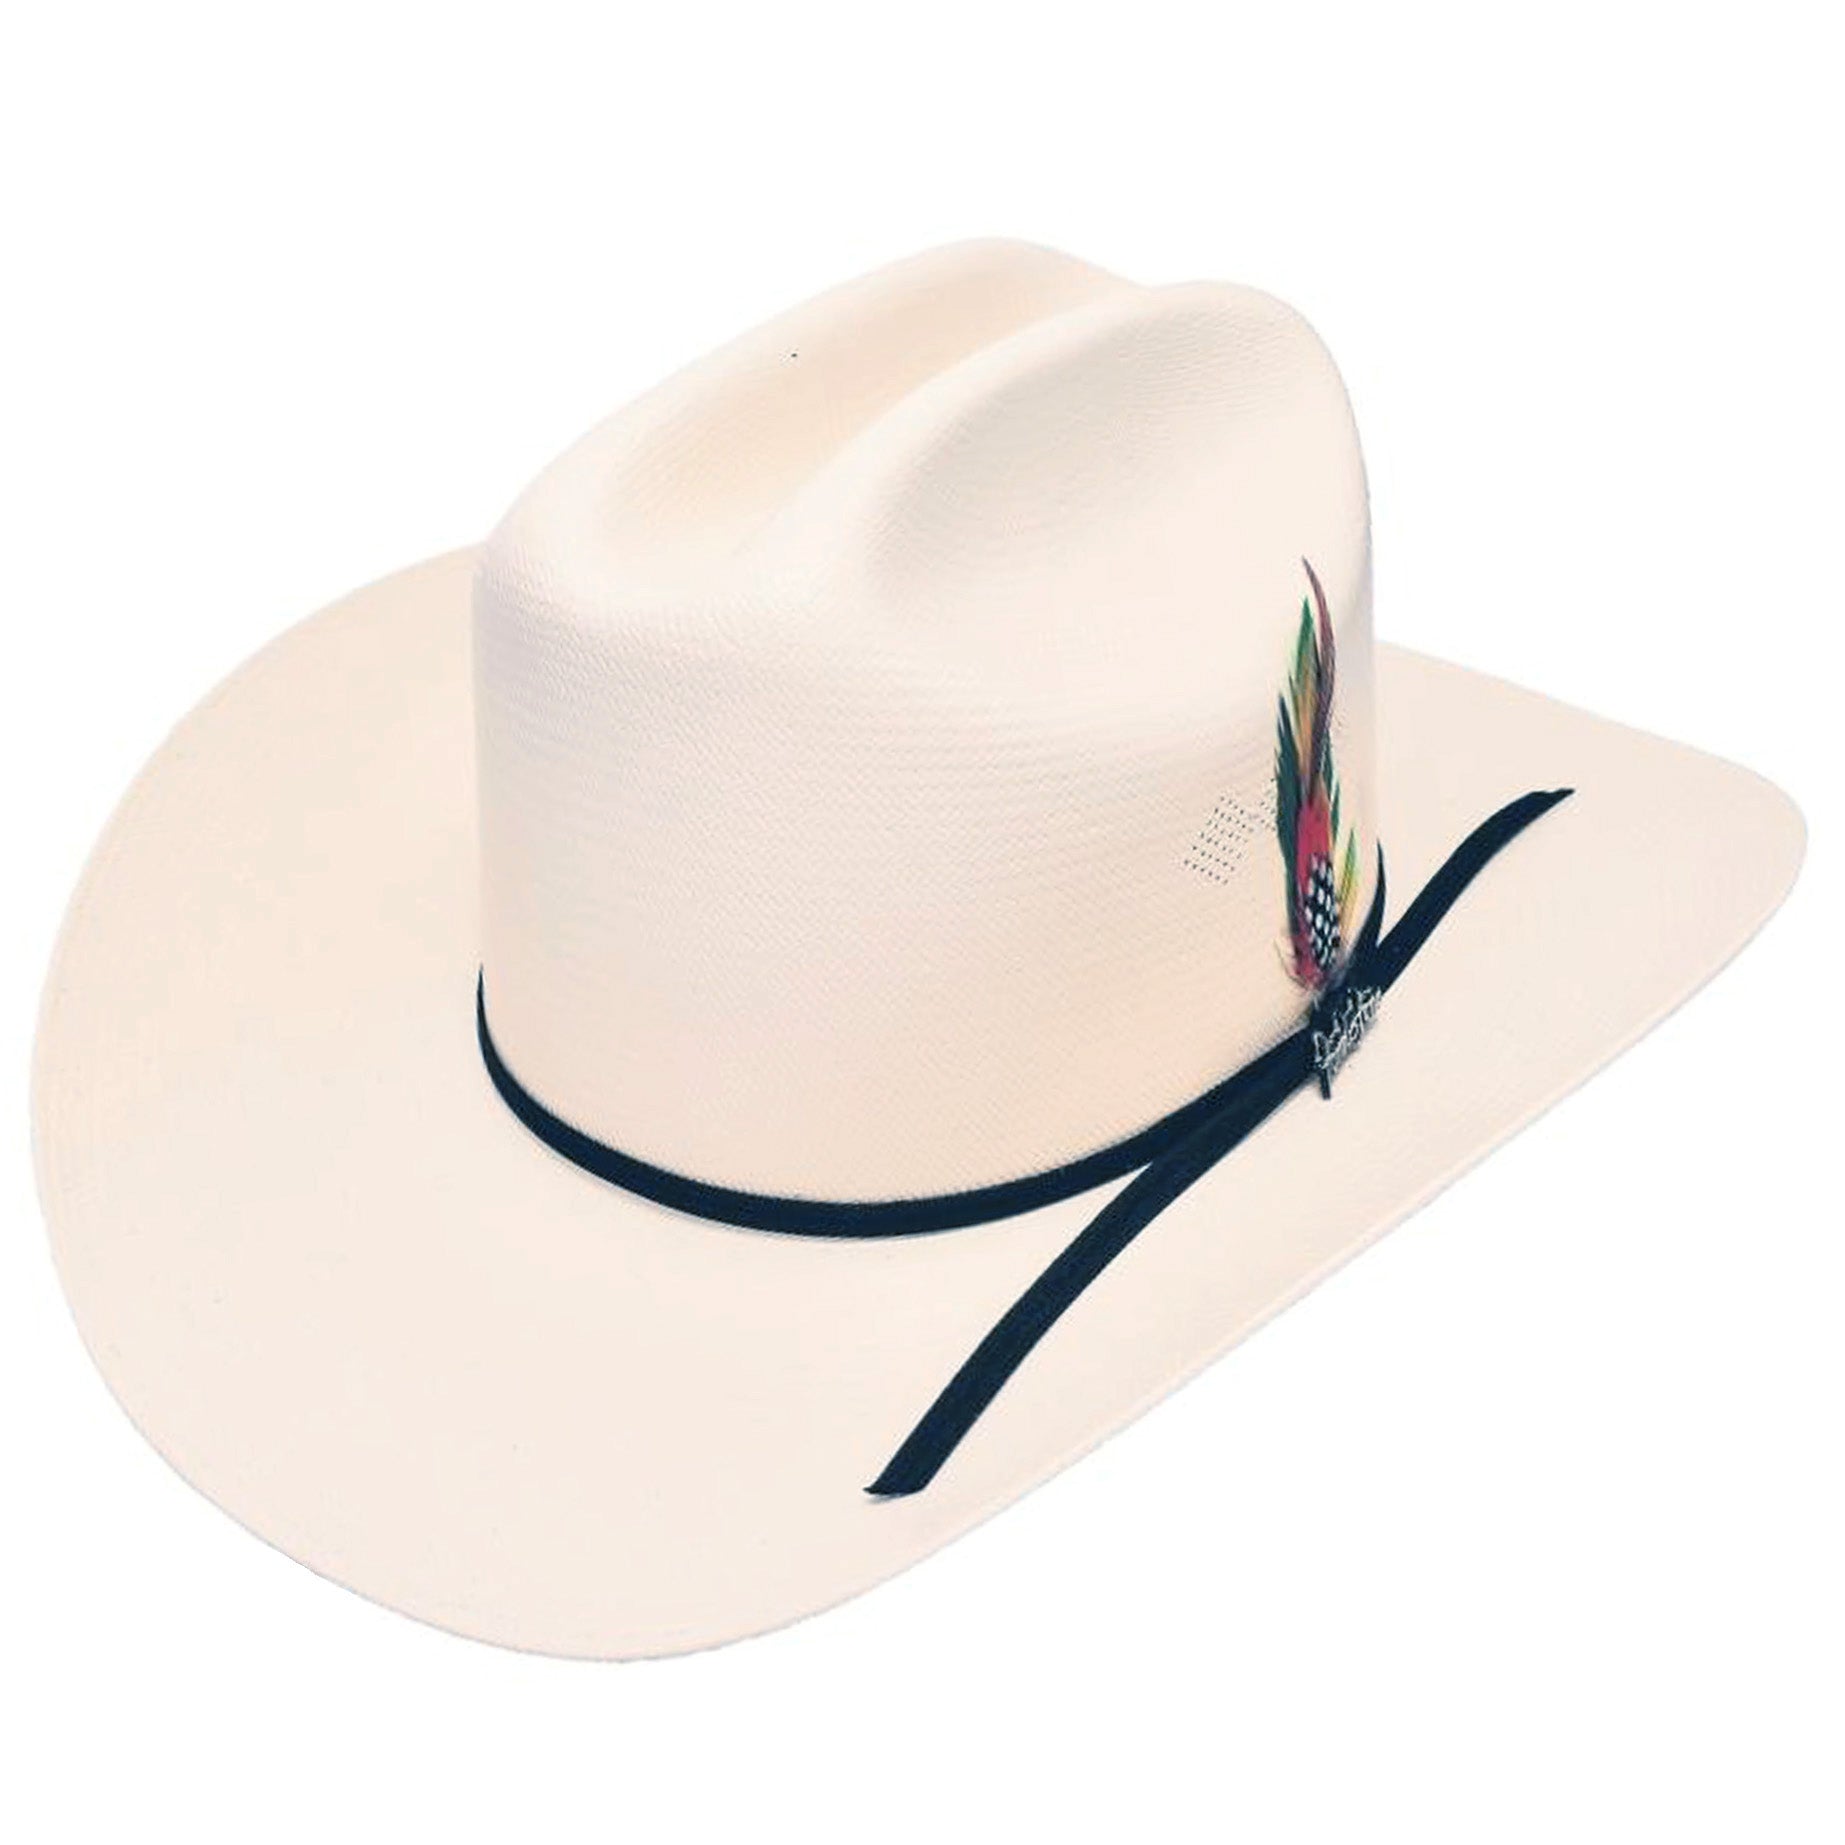 Sombrero cowboy